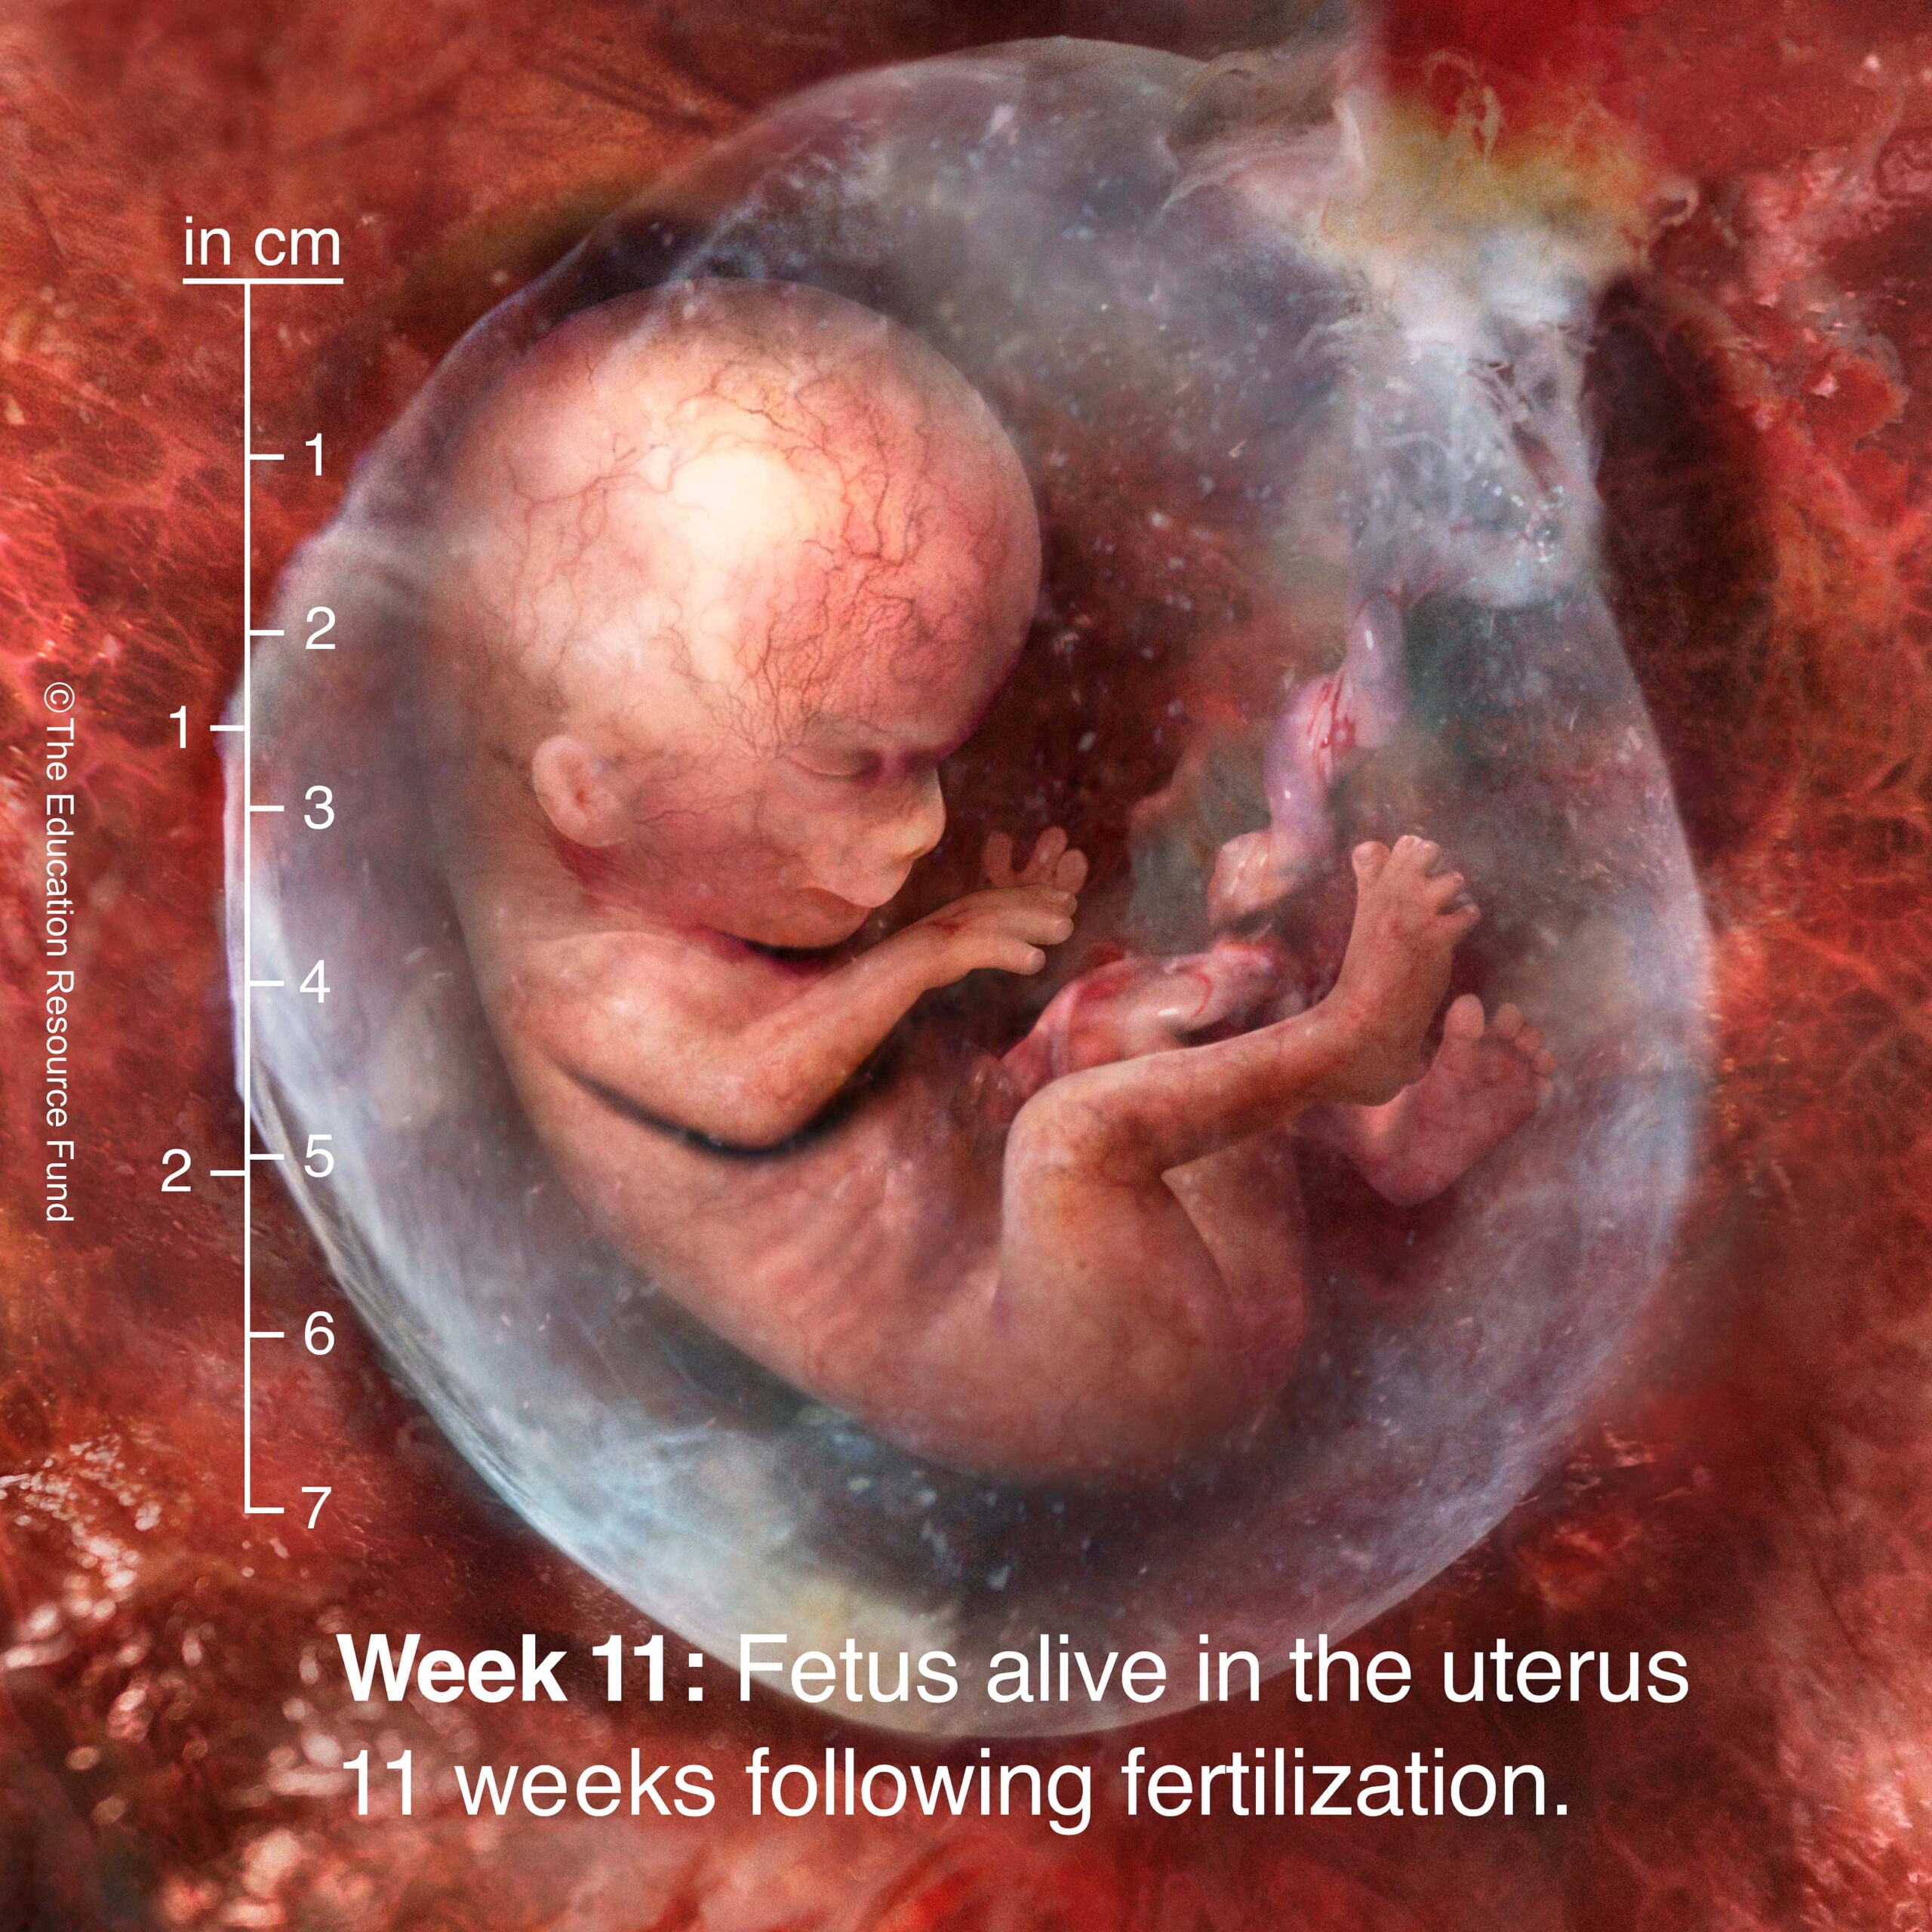 Week 11: Embryo alive in the uterus 11 weeks following fertilization